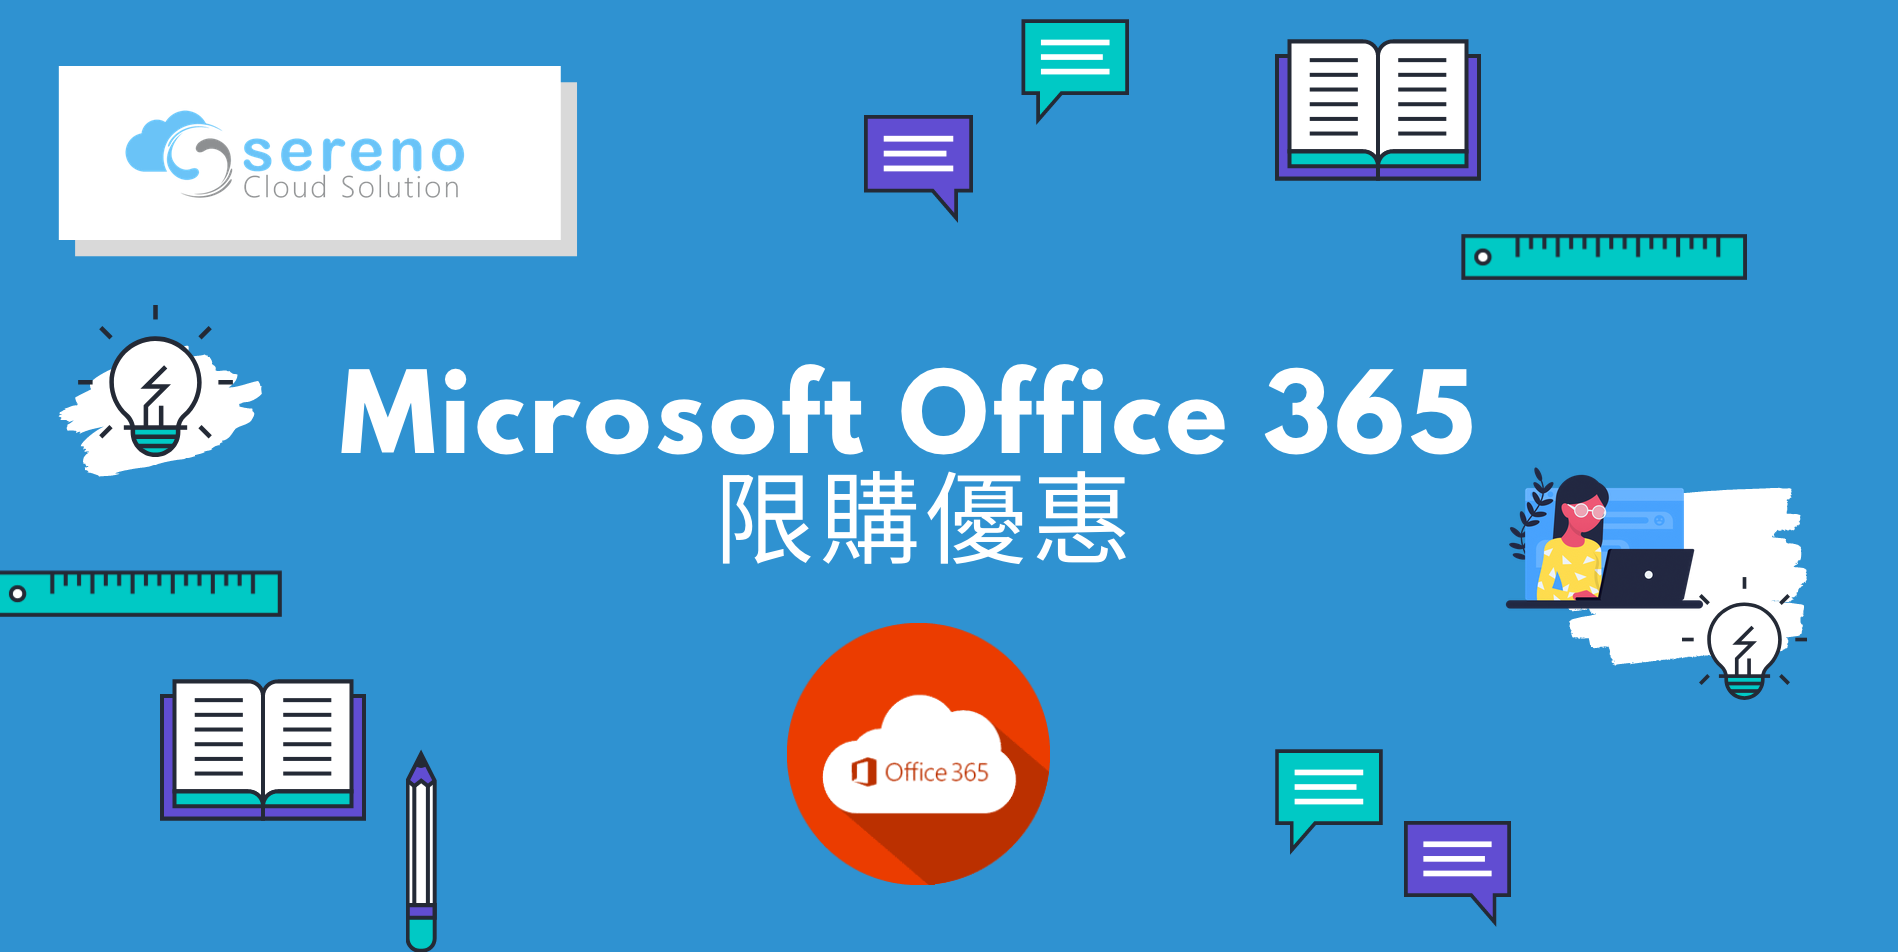 Microsoft Office 365 限購優惠2019